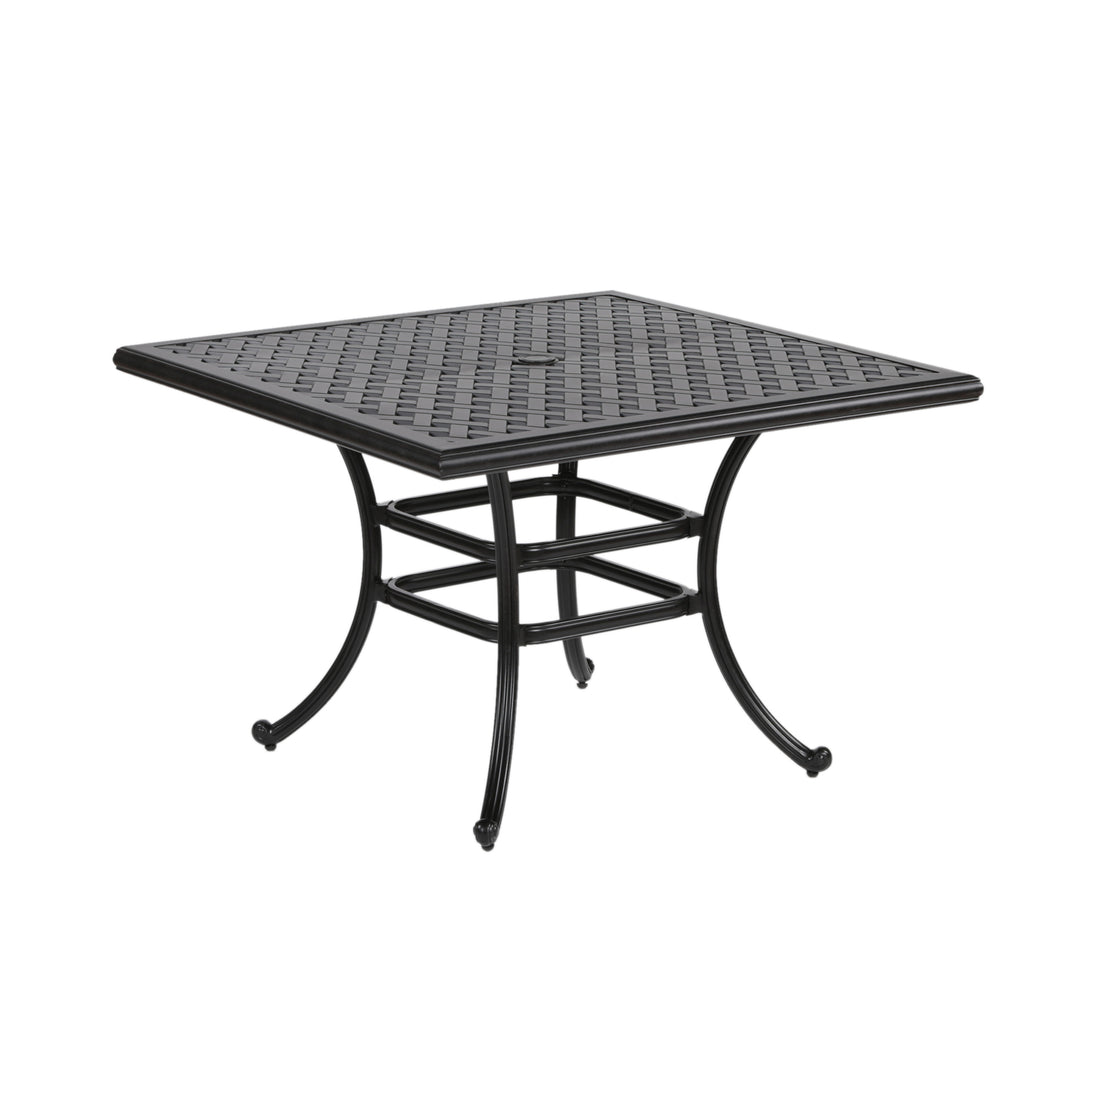 44" Square Dining Table, Dark Lava Bronze antique bronze-aluminum